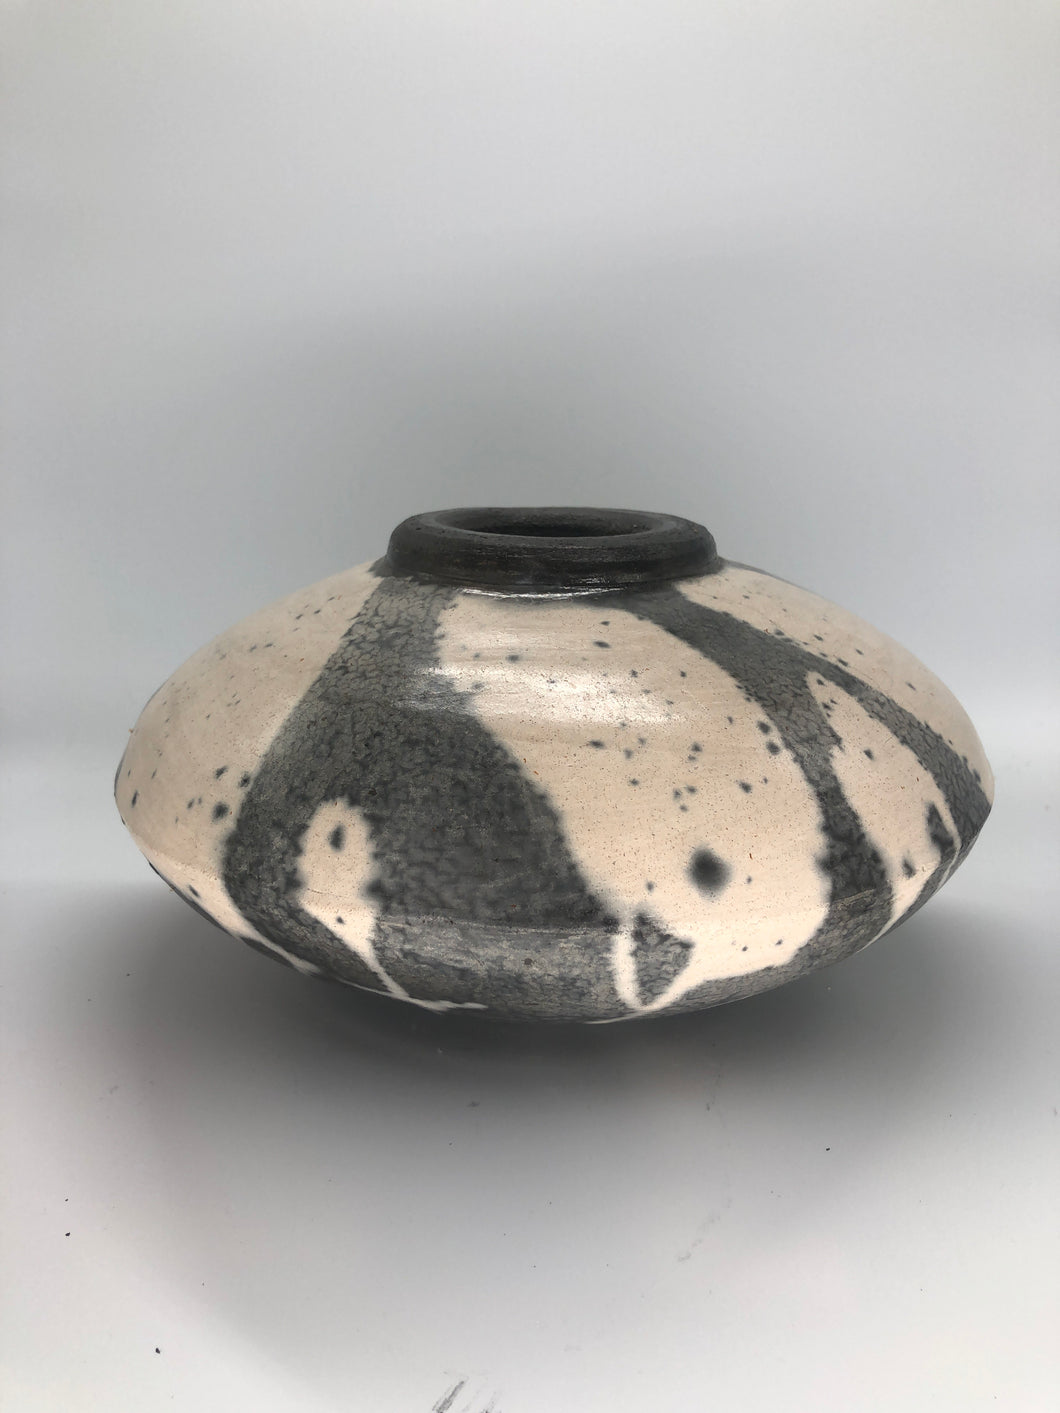 Unidentified Ceramic Object